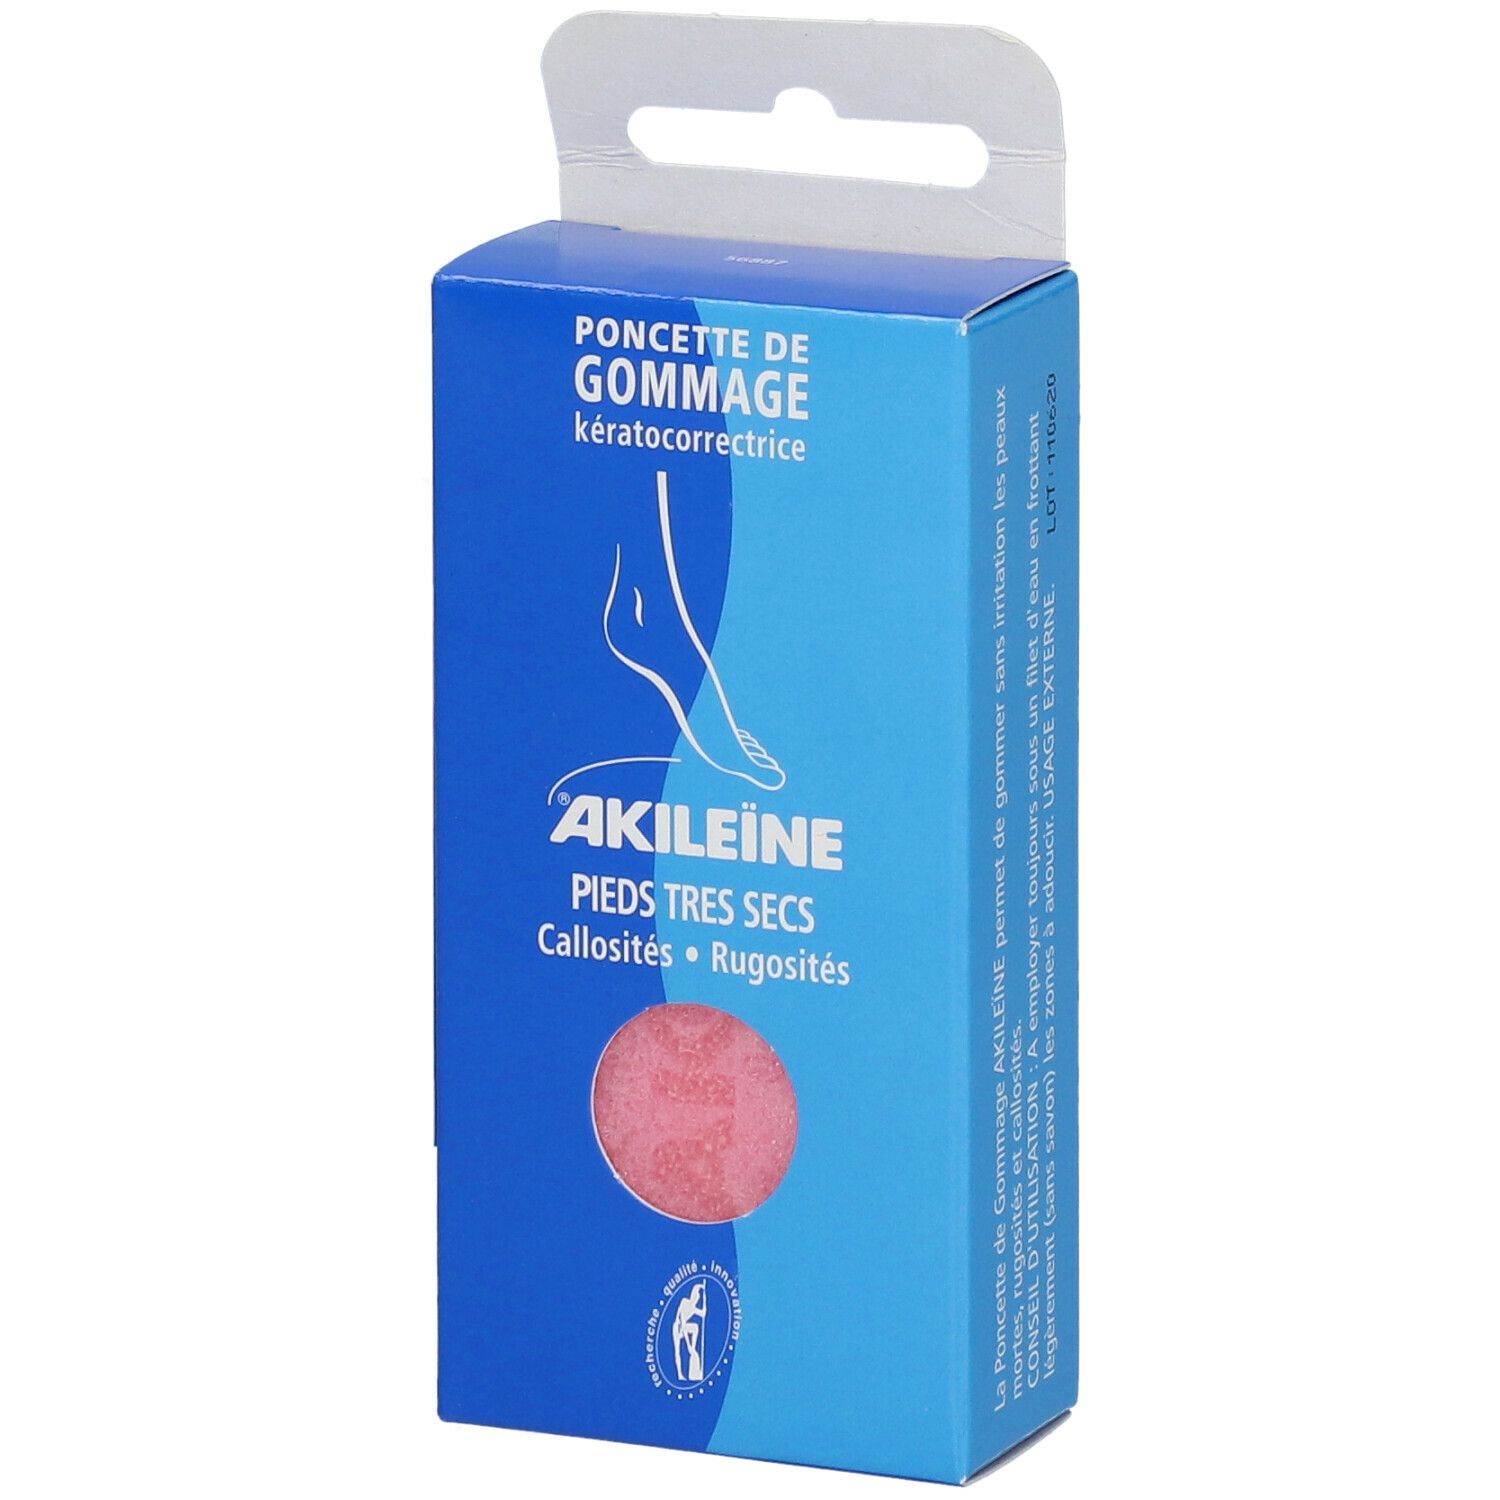 Akileïne® Poncette de gommage